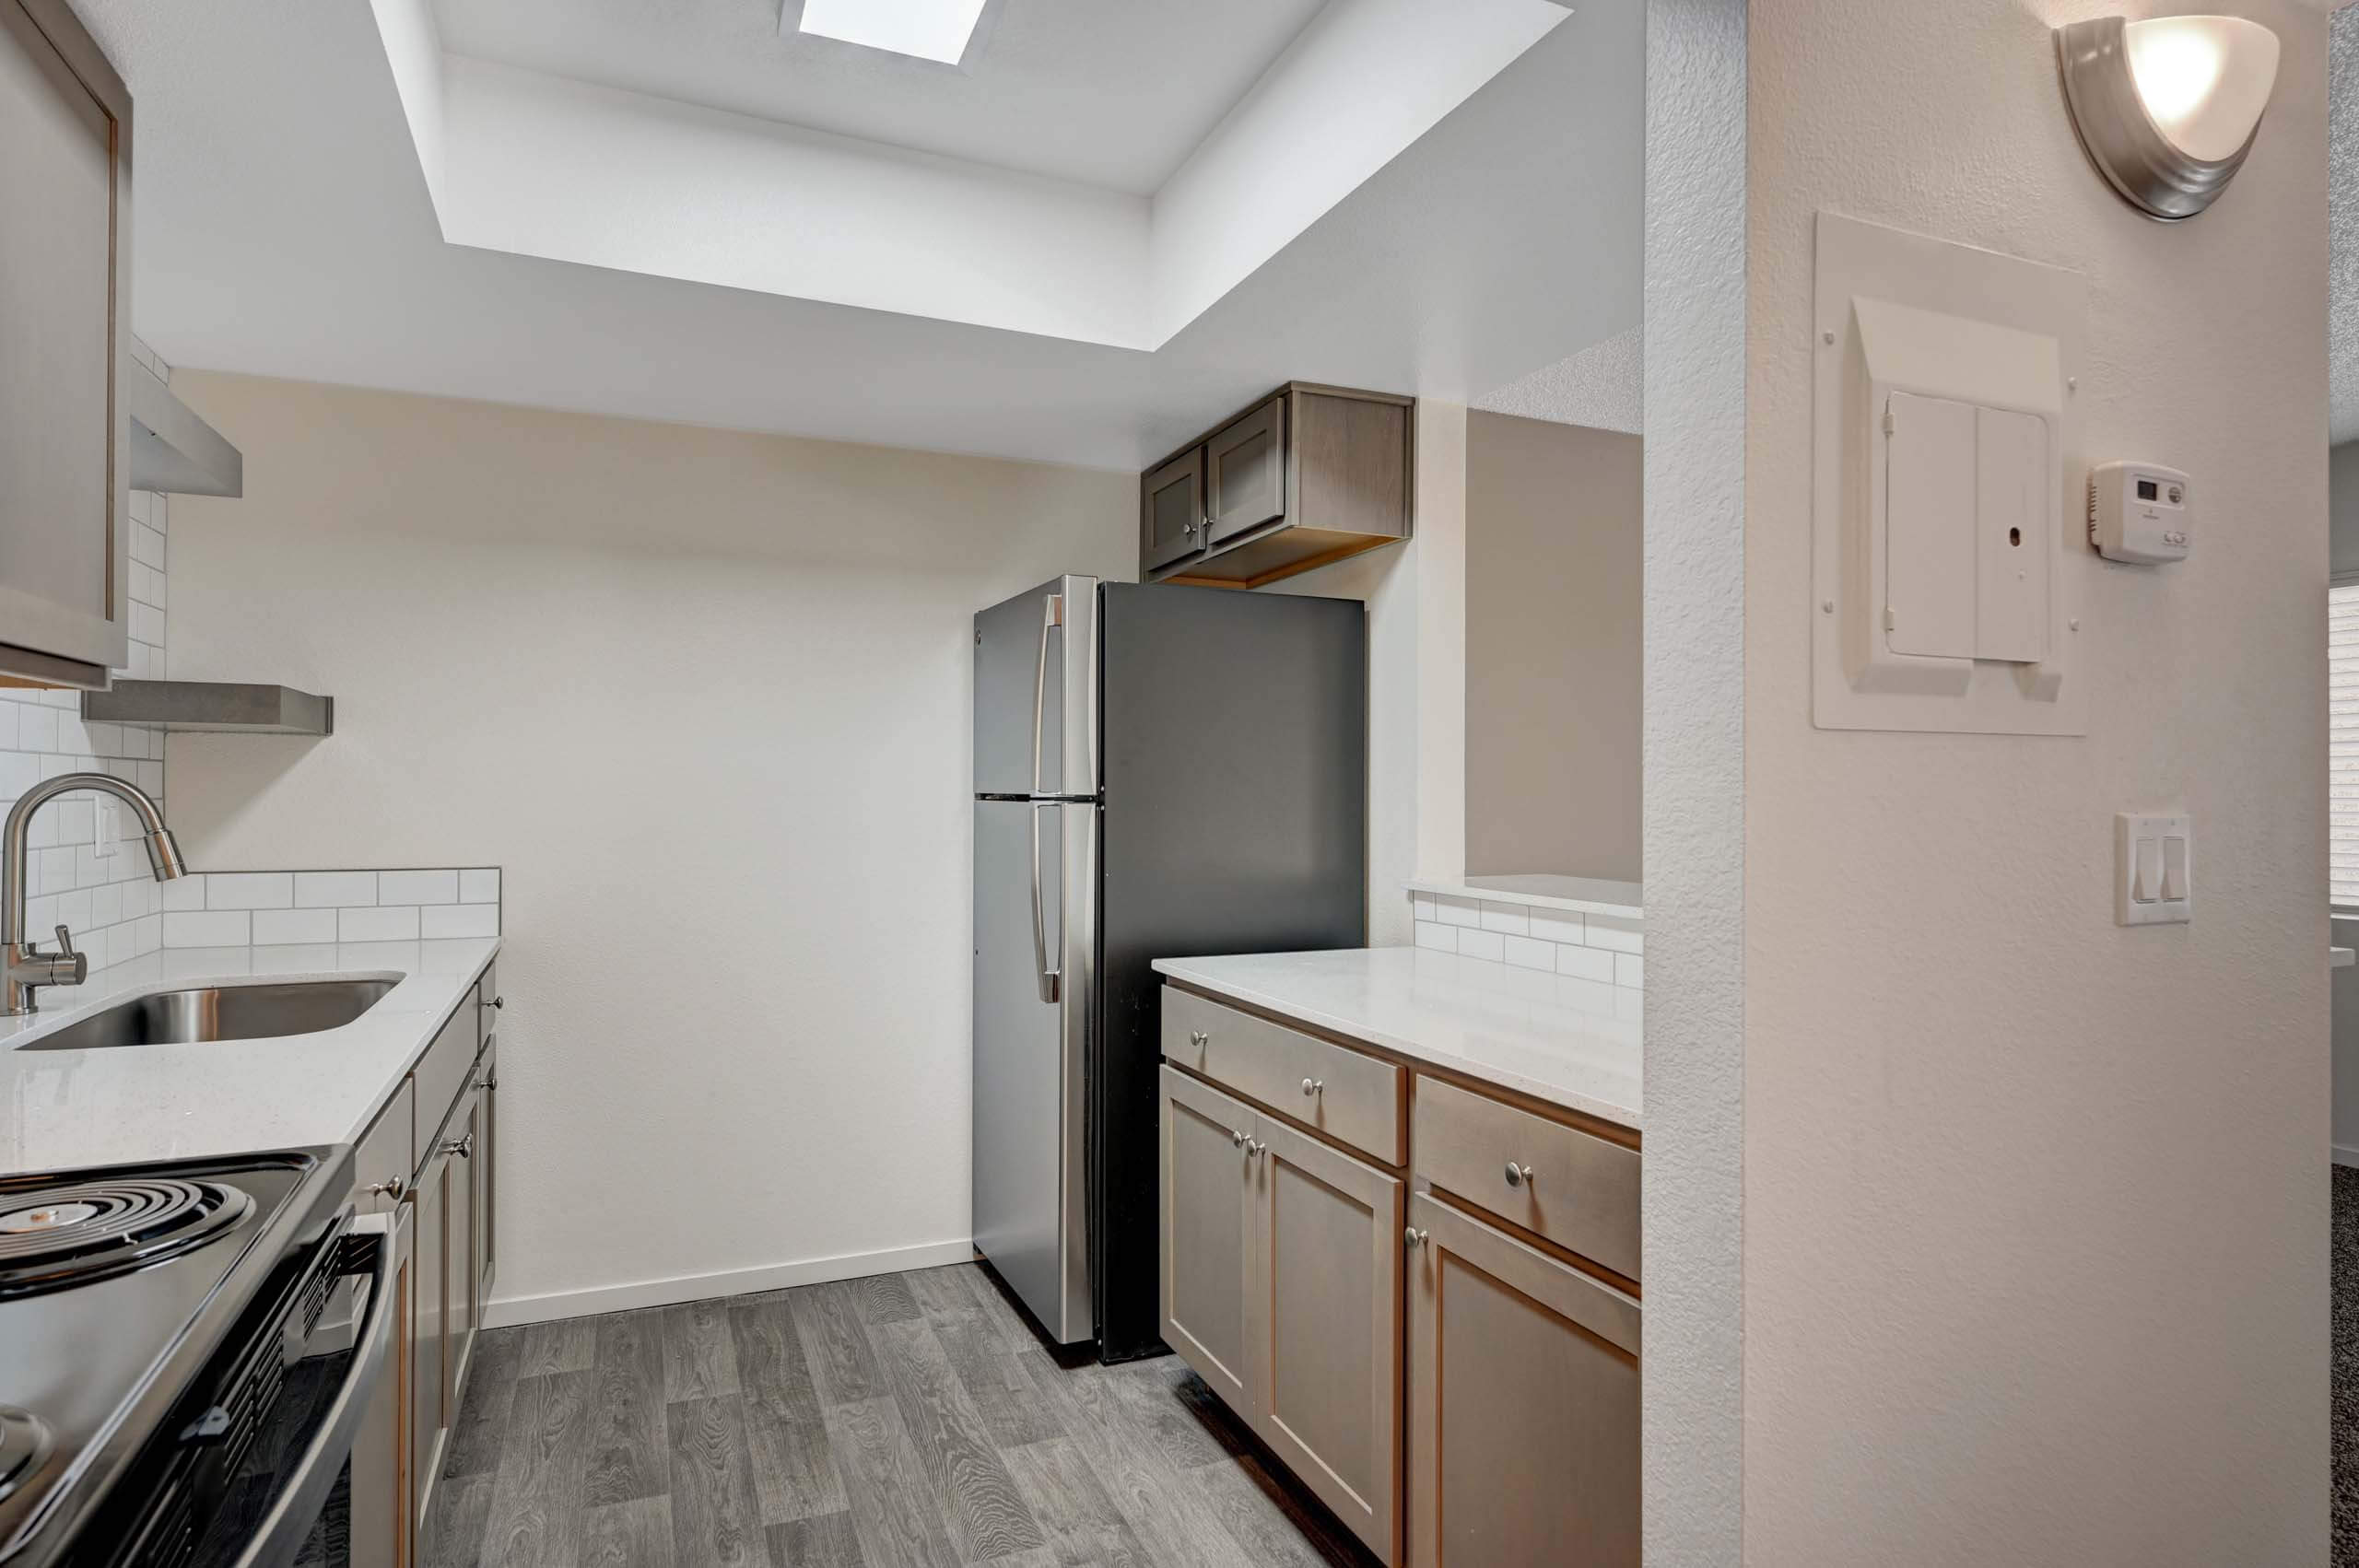 Solstice studio apartment interior - kitchen